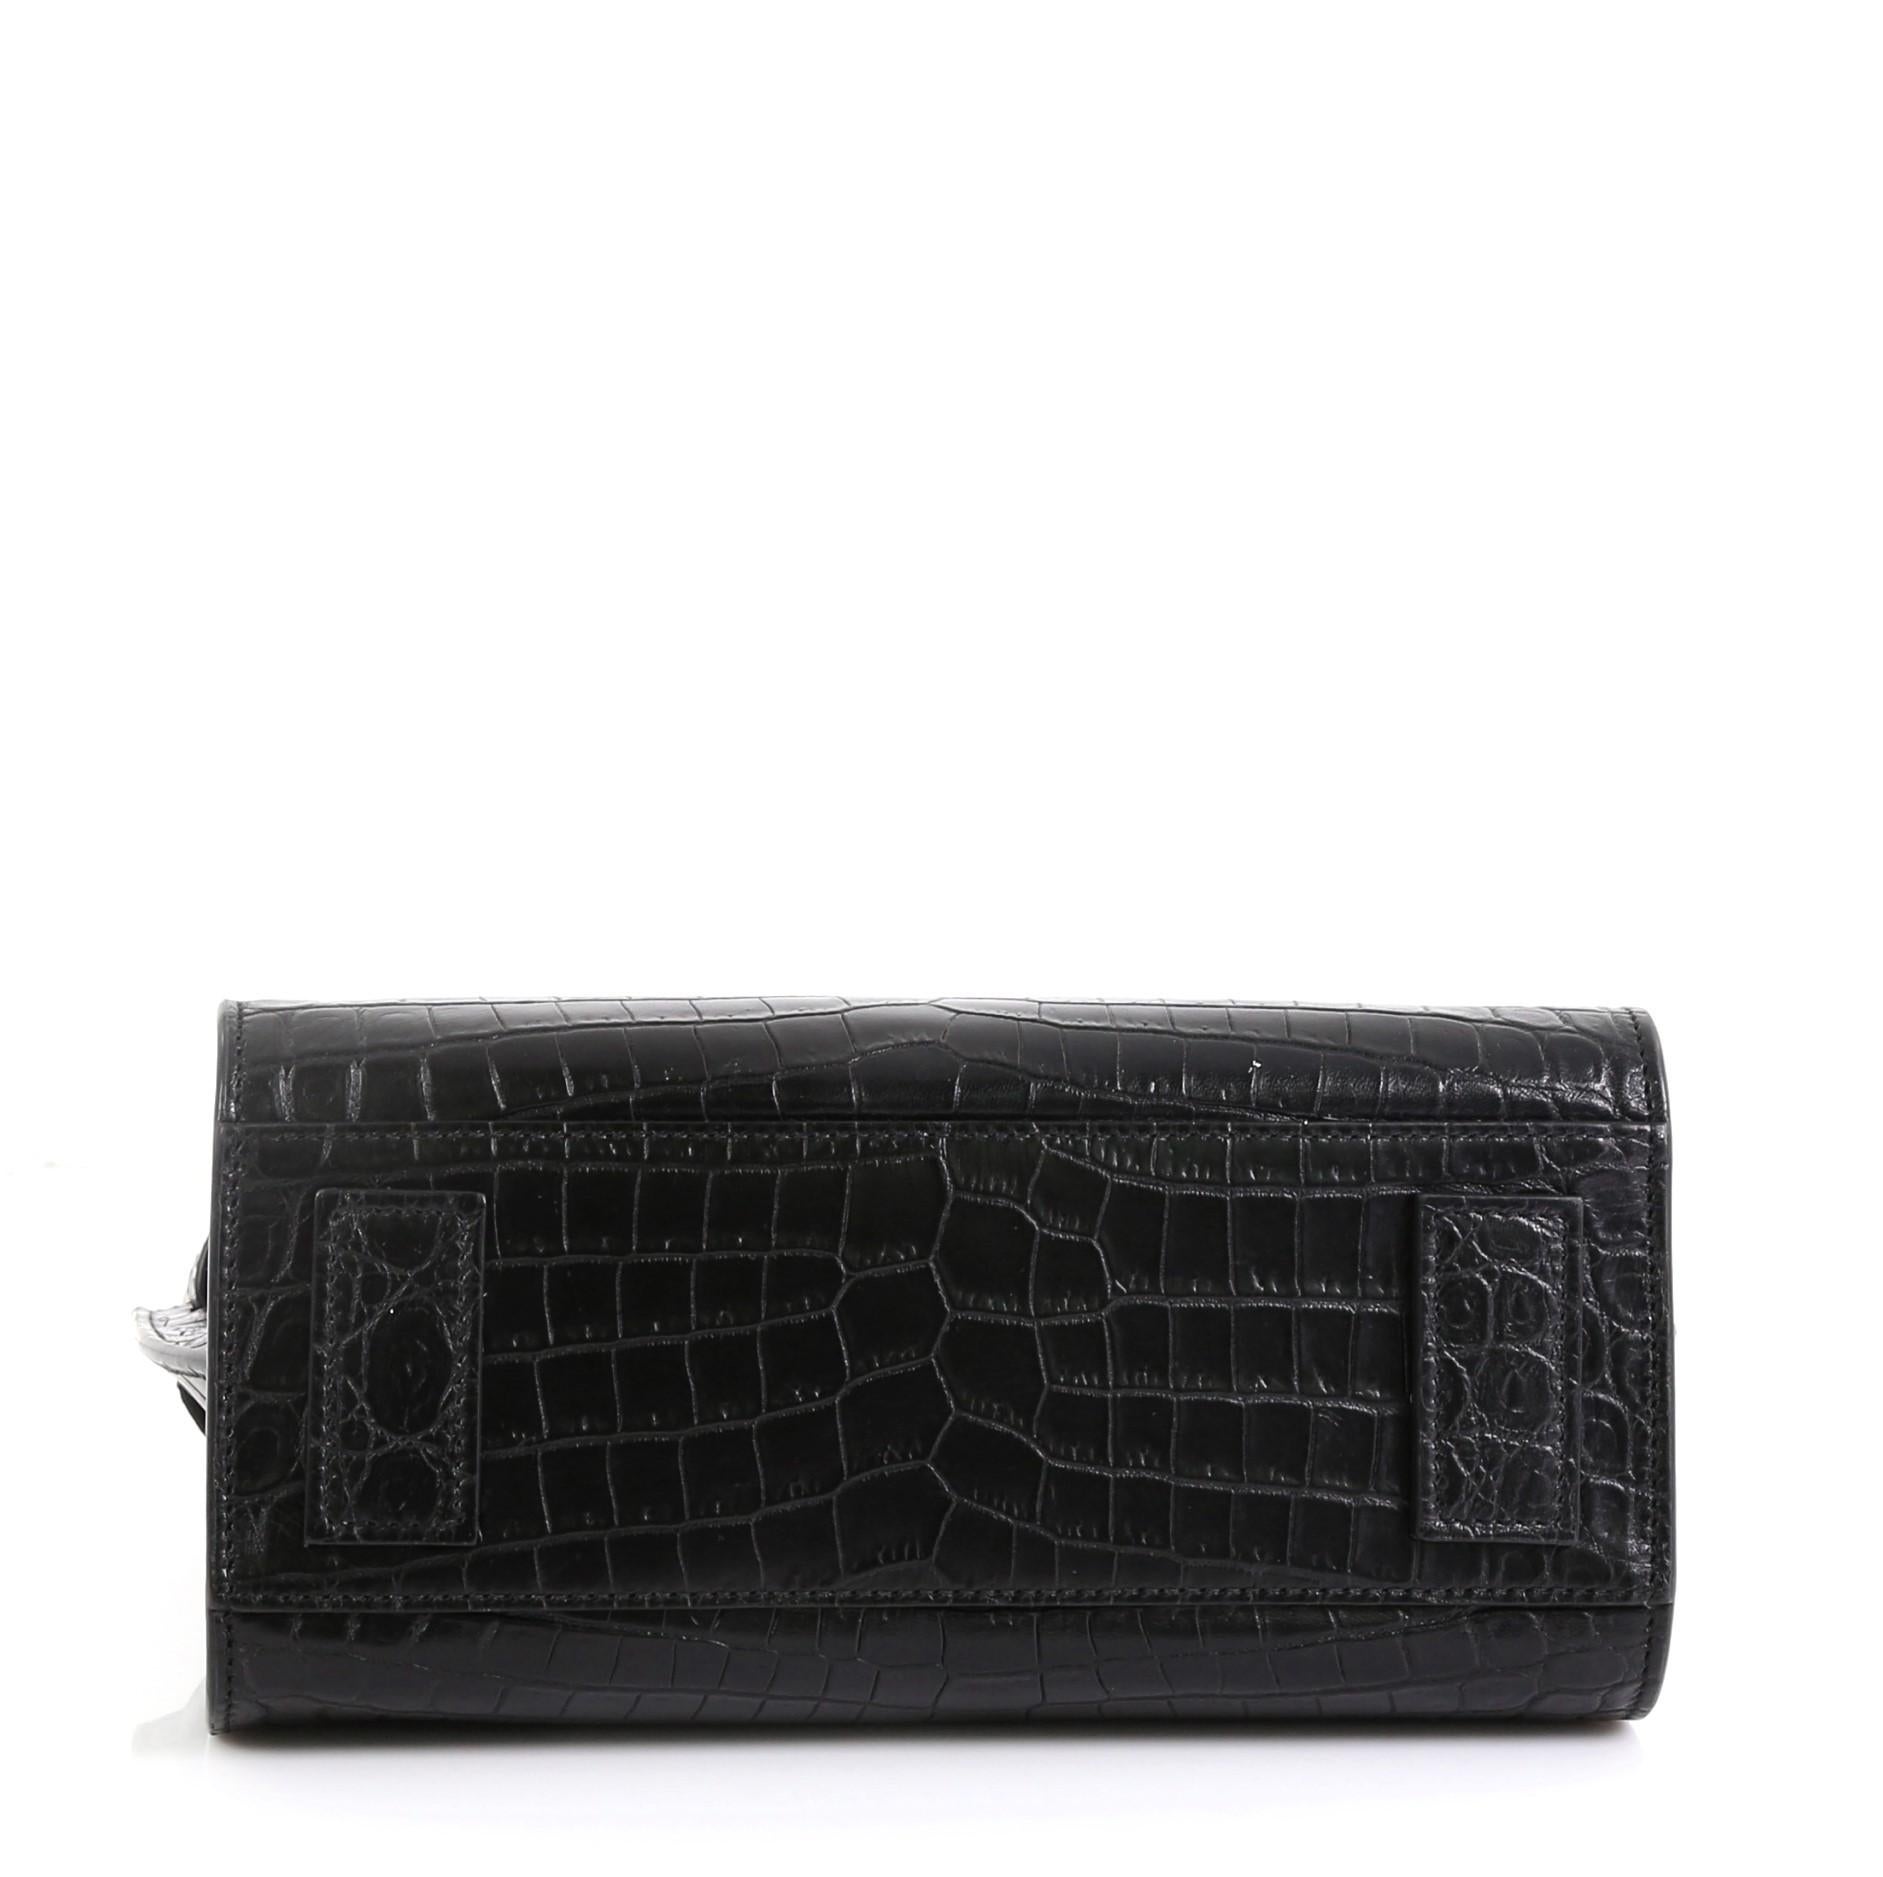 Black Saint Laurent Sac de Jour Souple Bag Crocodile Embossed Leather Nano